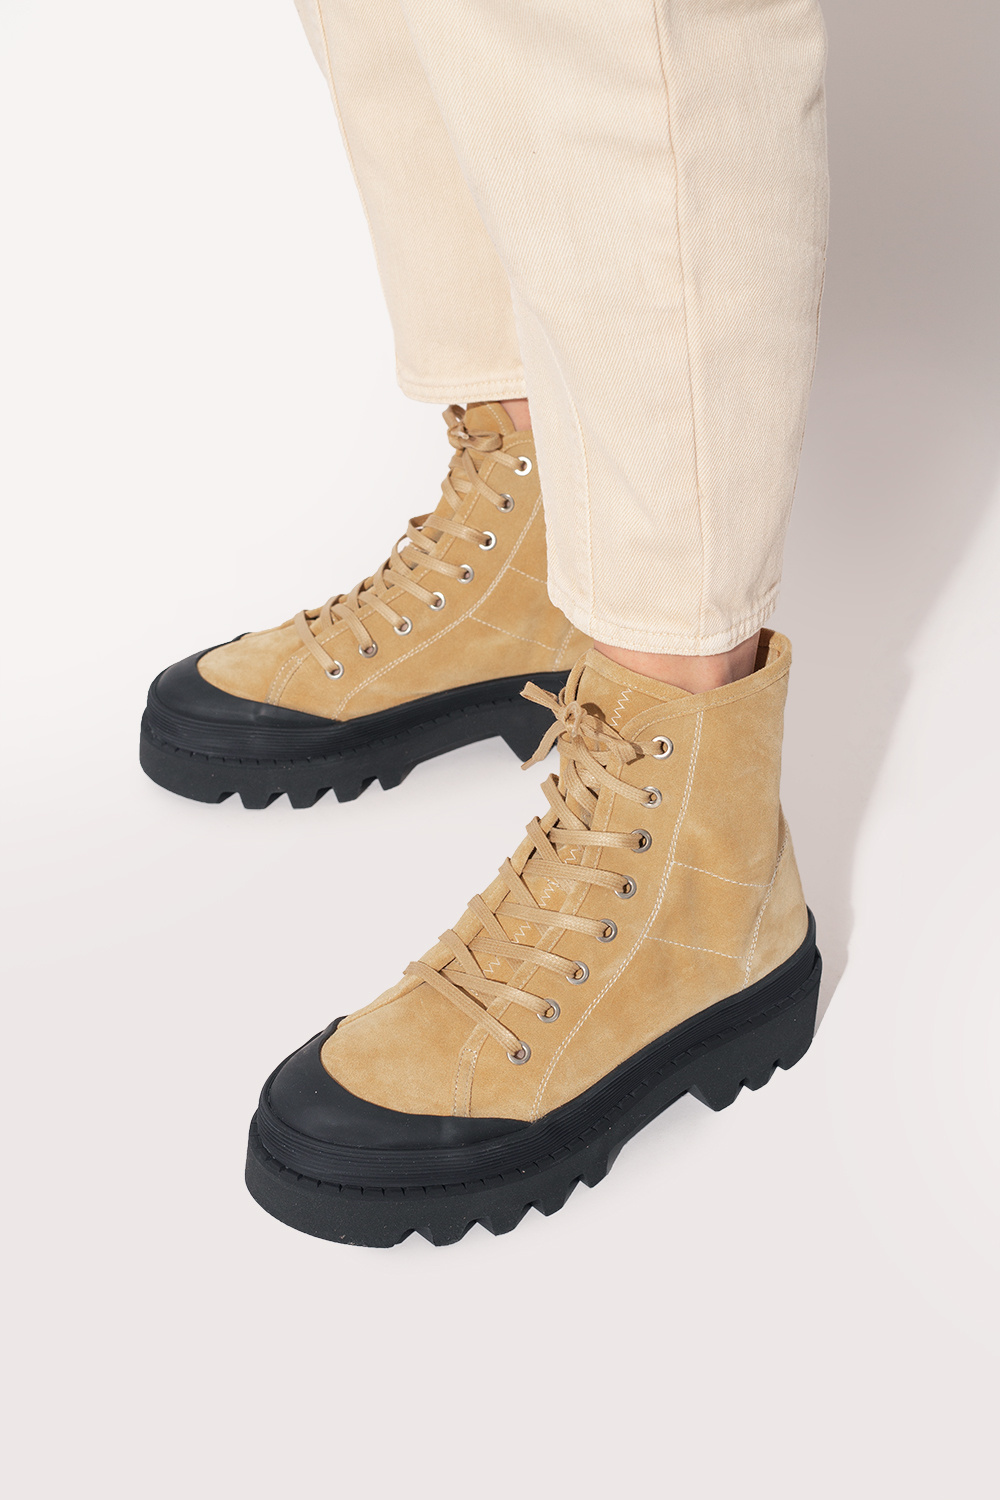 proenza Showed Schouler ‘Combat’ boots